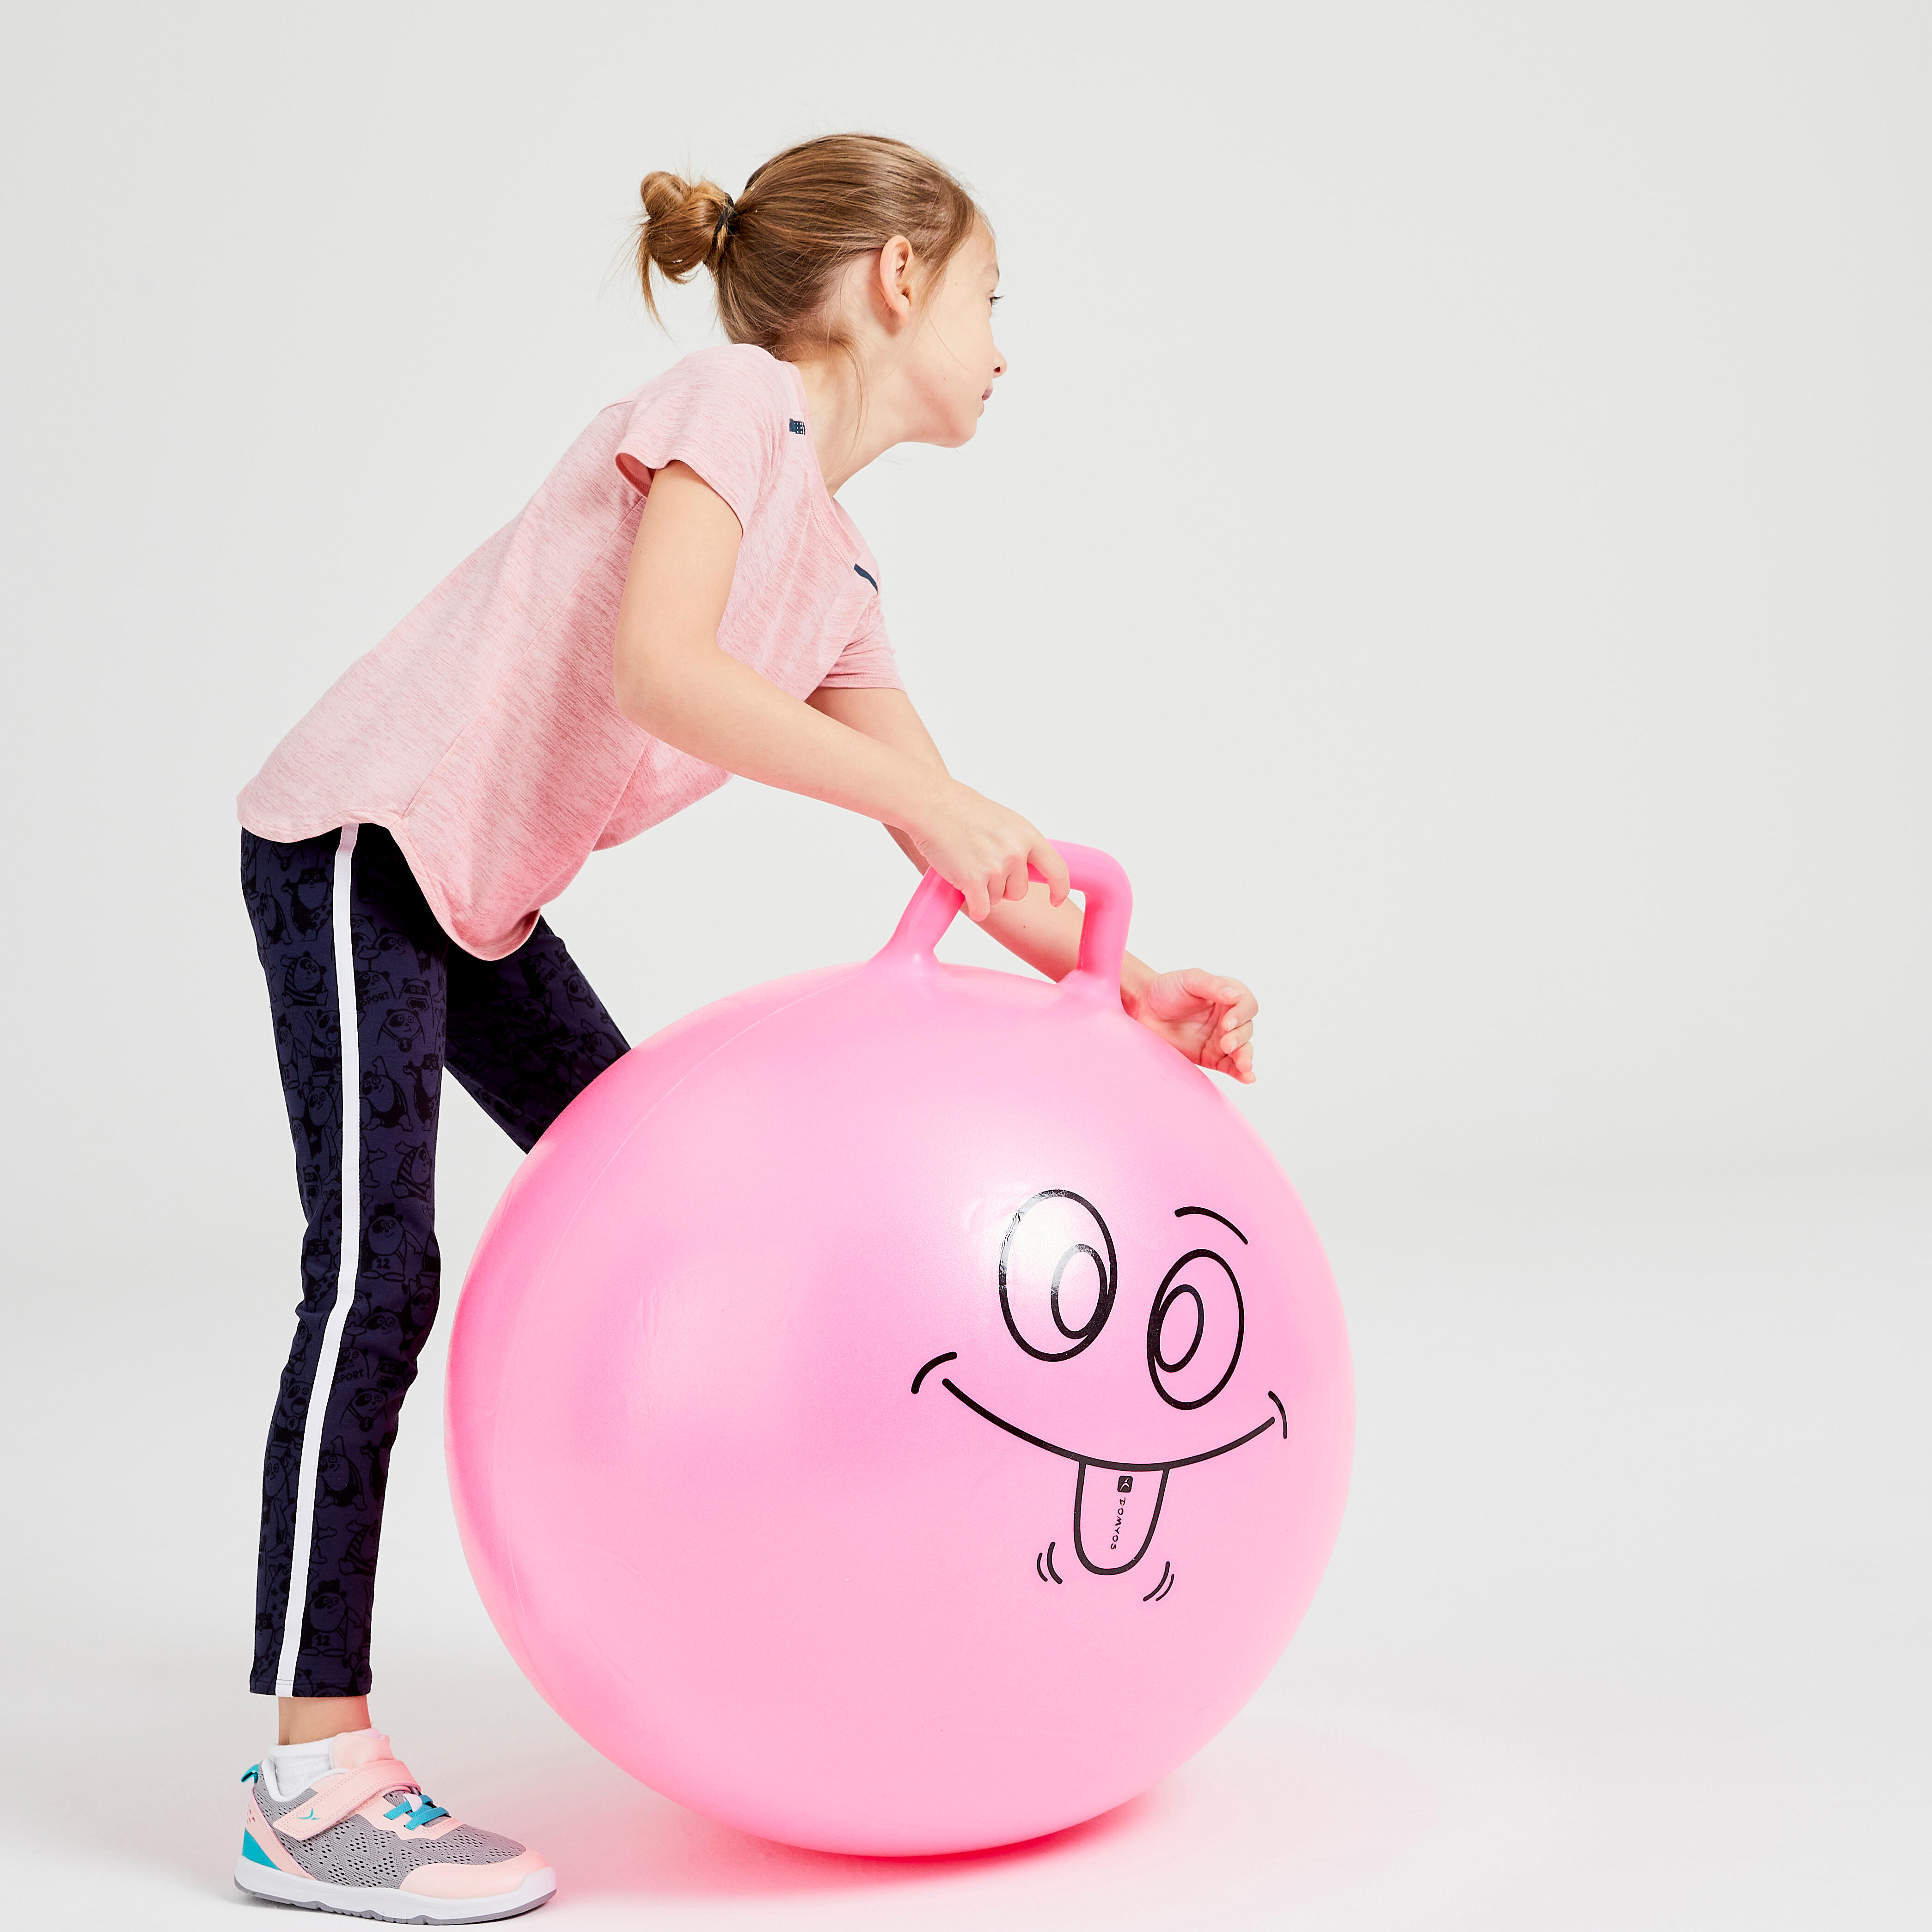 Ballon sauteur enfant - Resist rose - DOMYOS